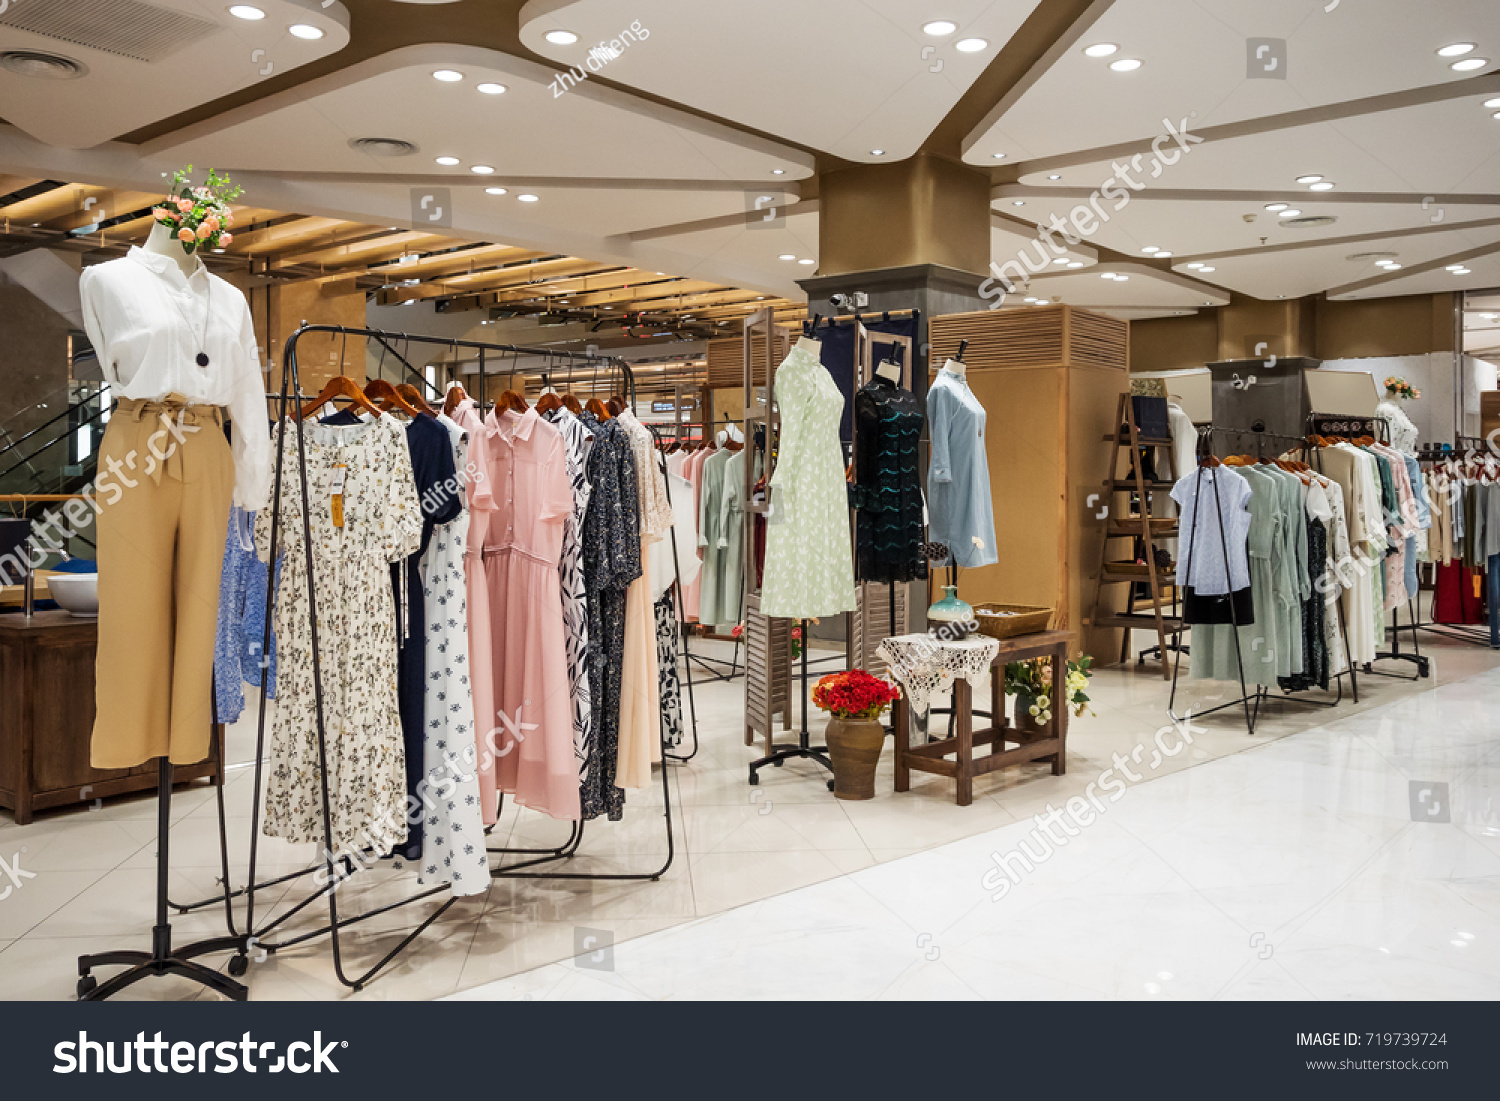 Retail Fashion Shopping Mall:https://www.shutterstock.com